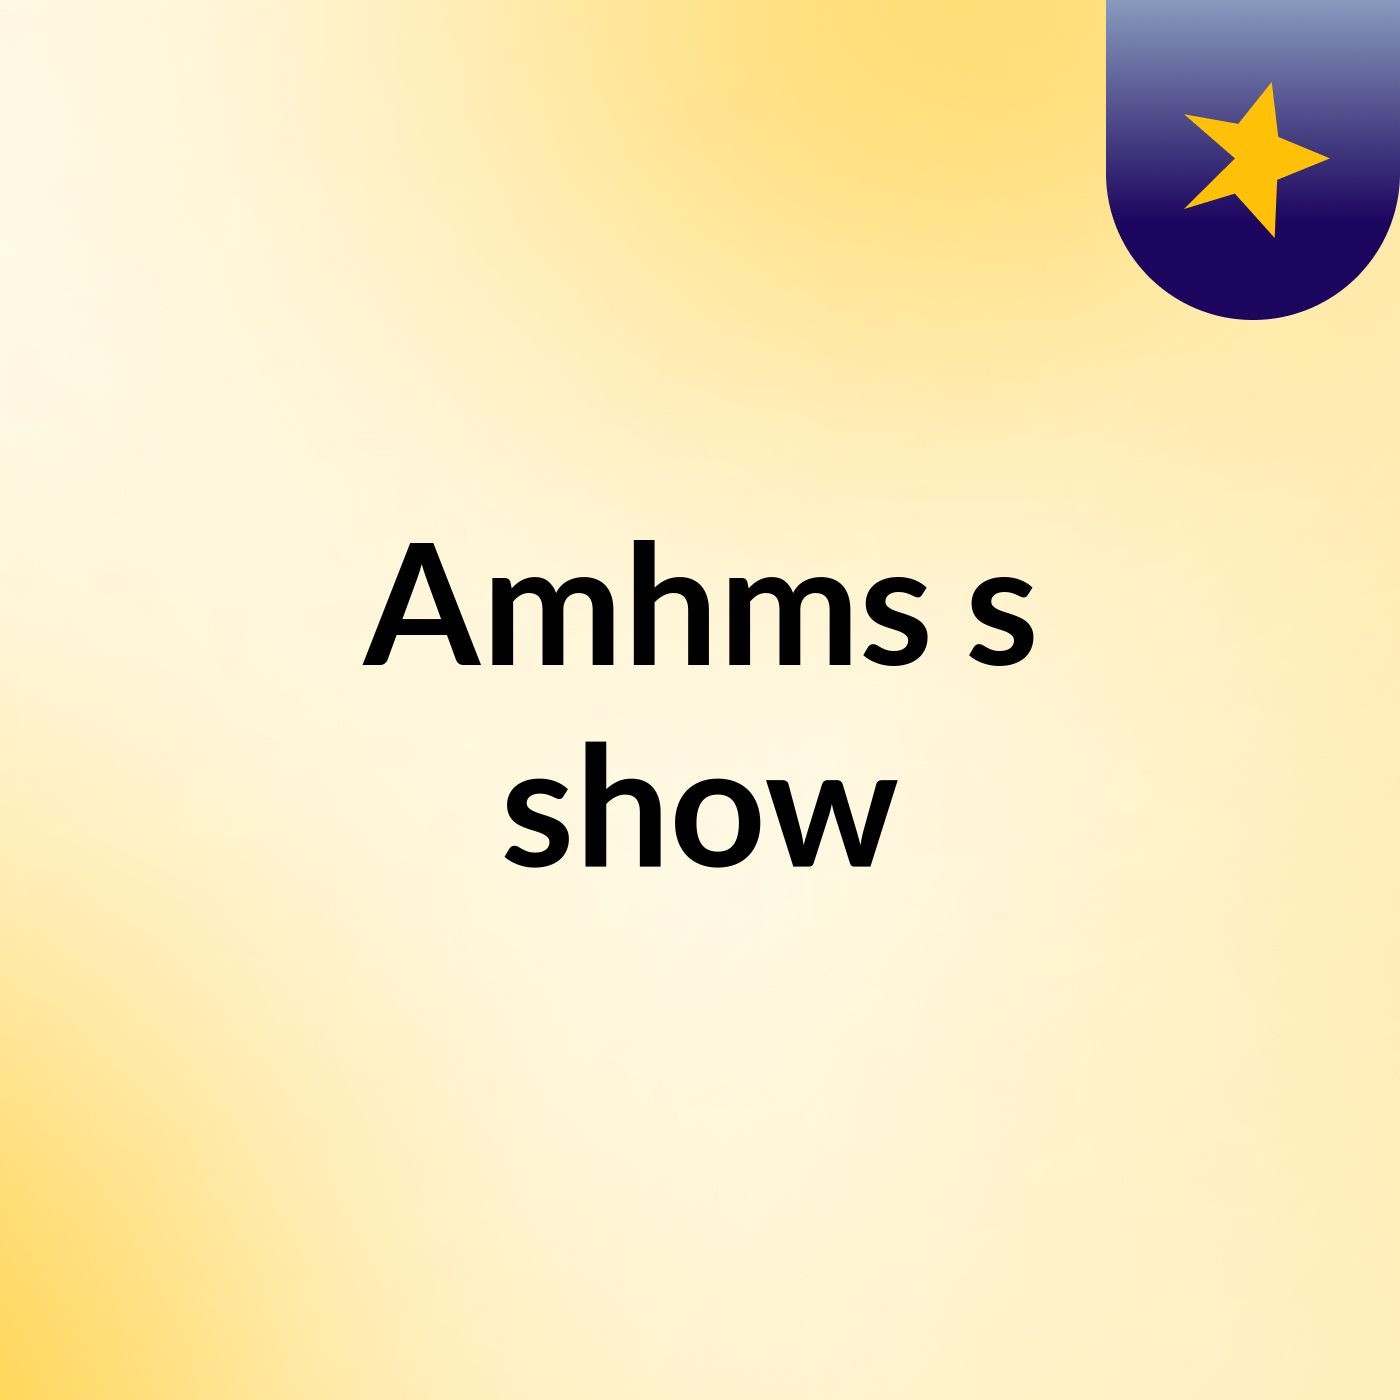 Amhms's show